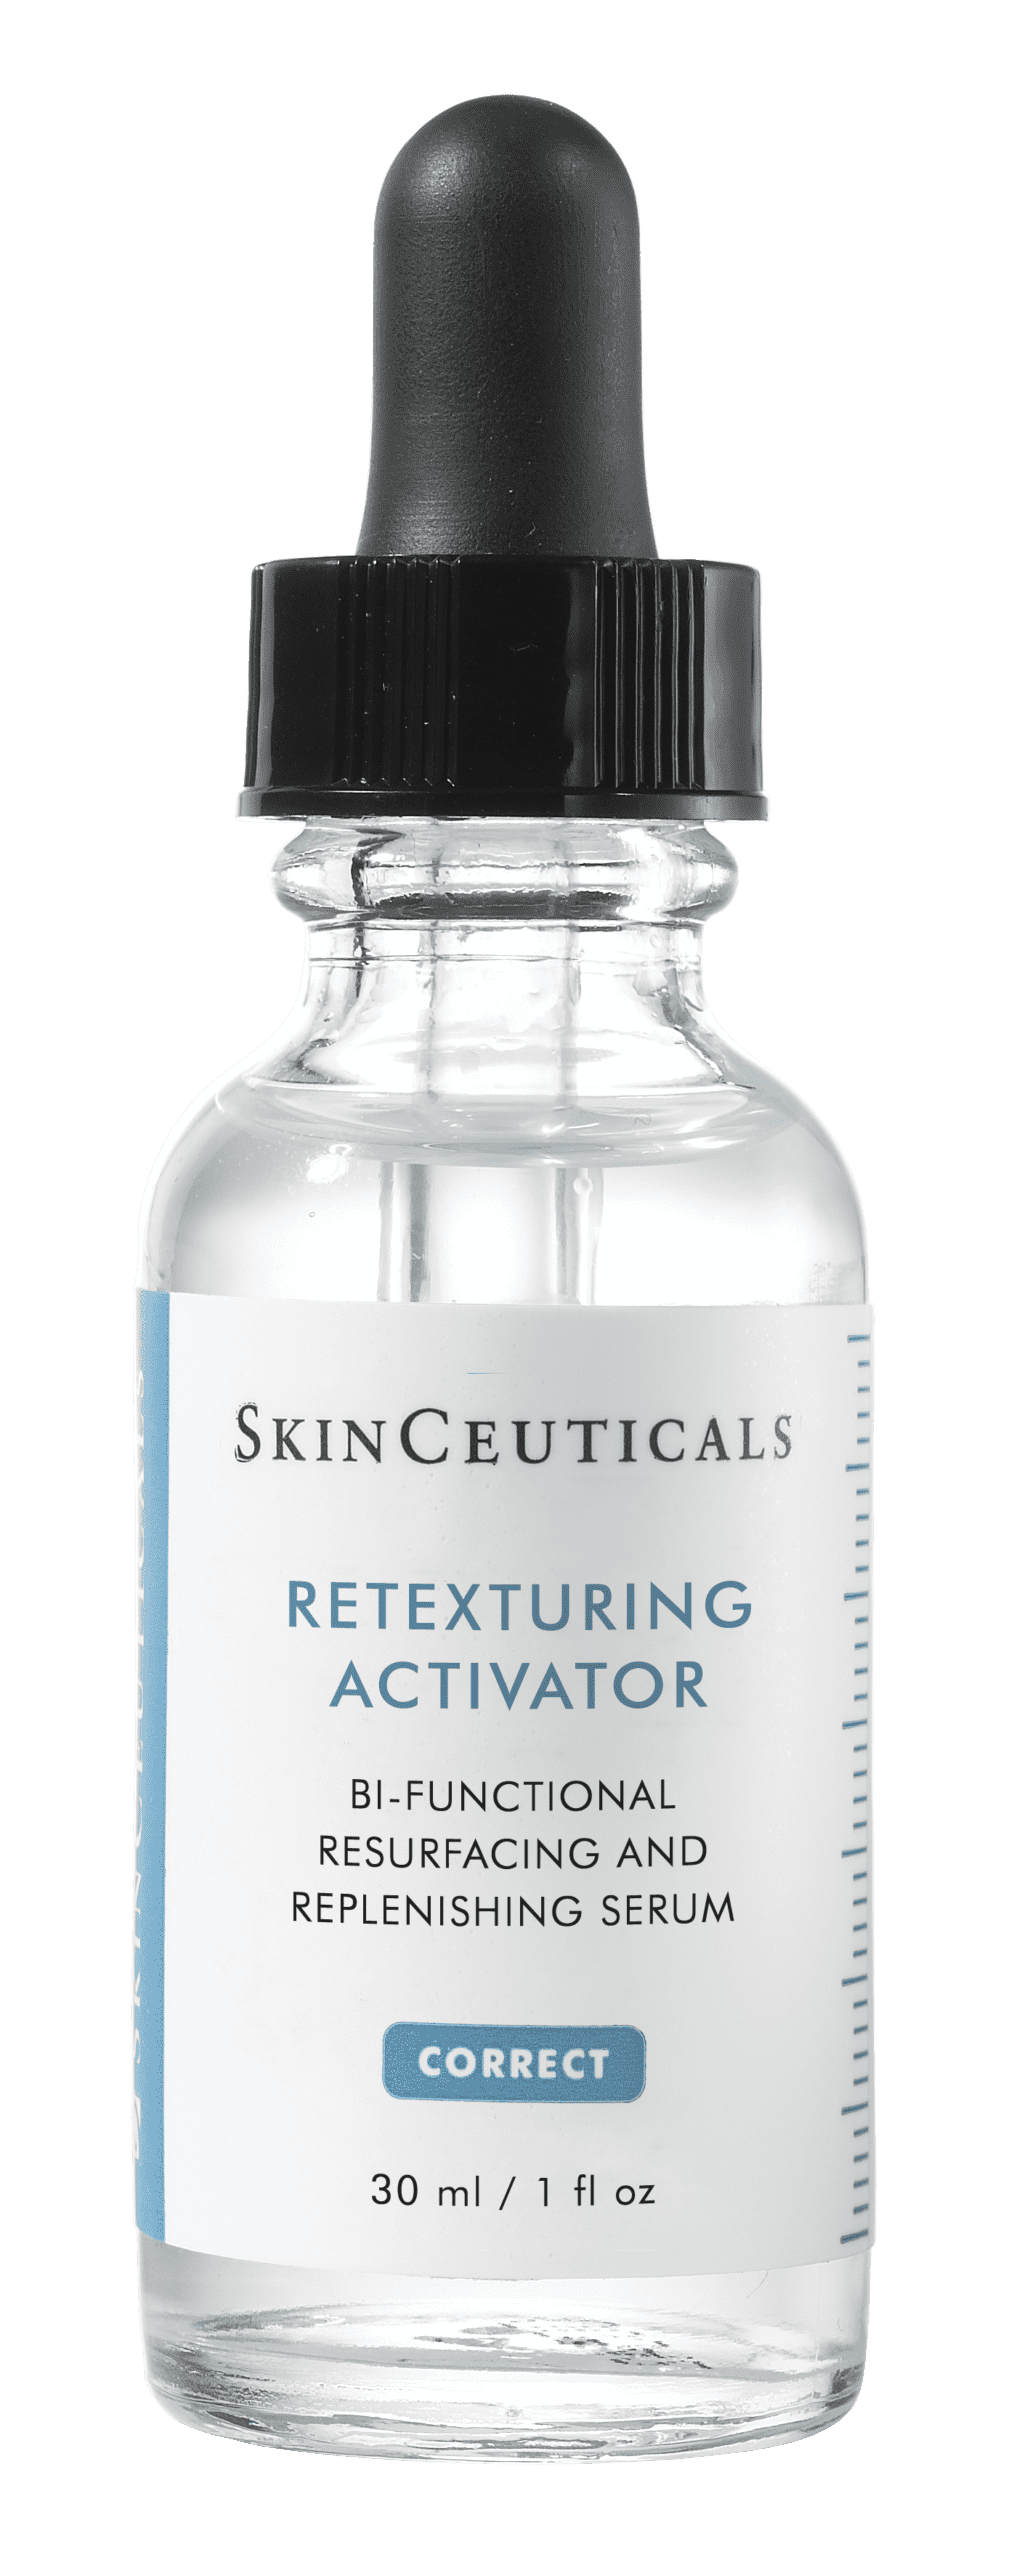 skinceuticals retexturing activator